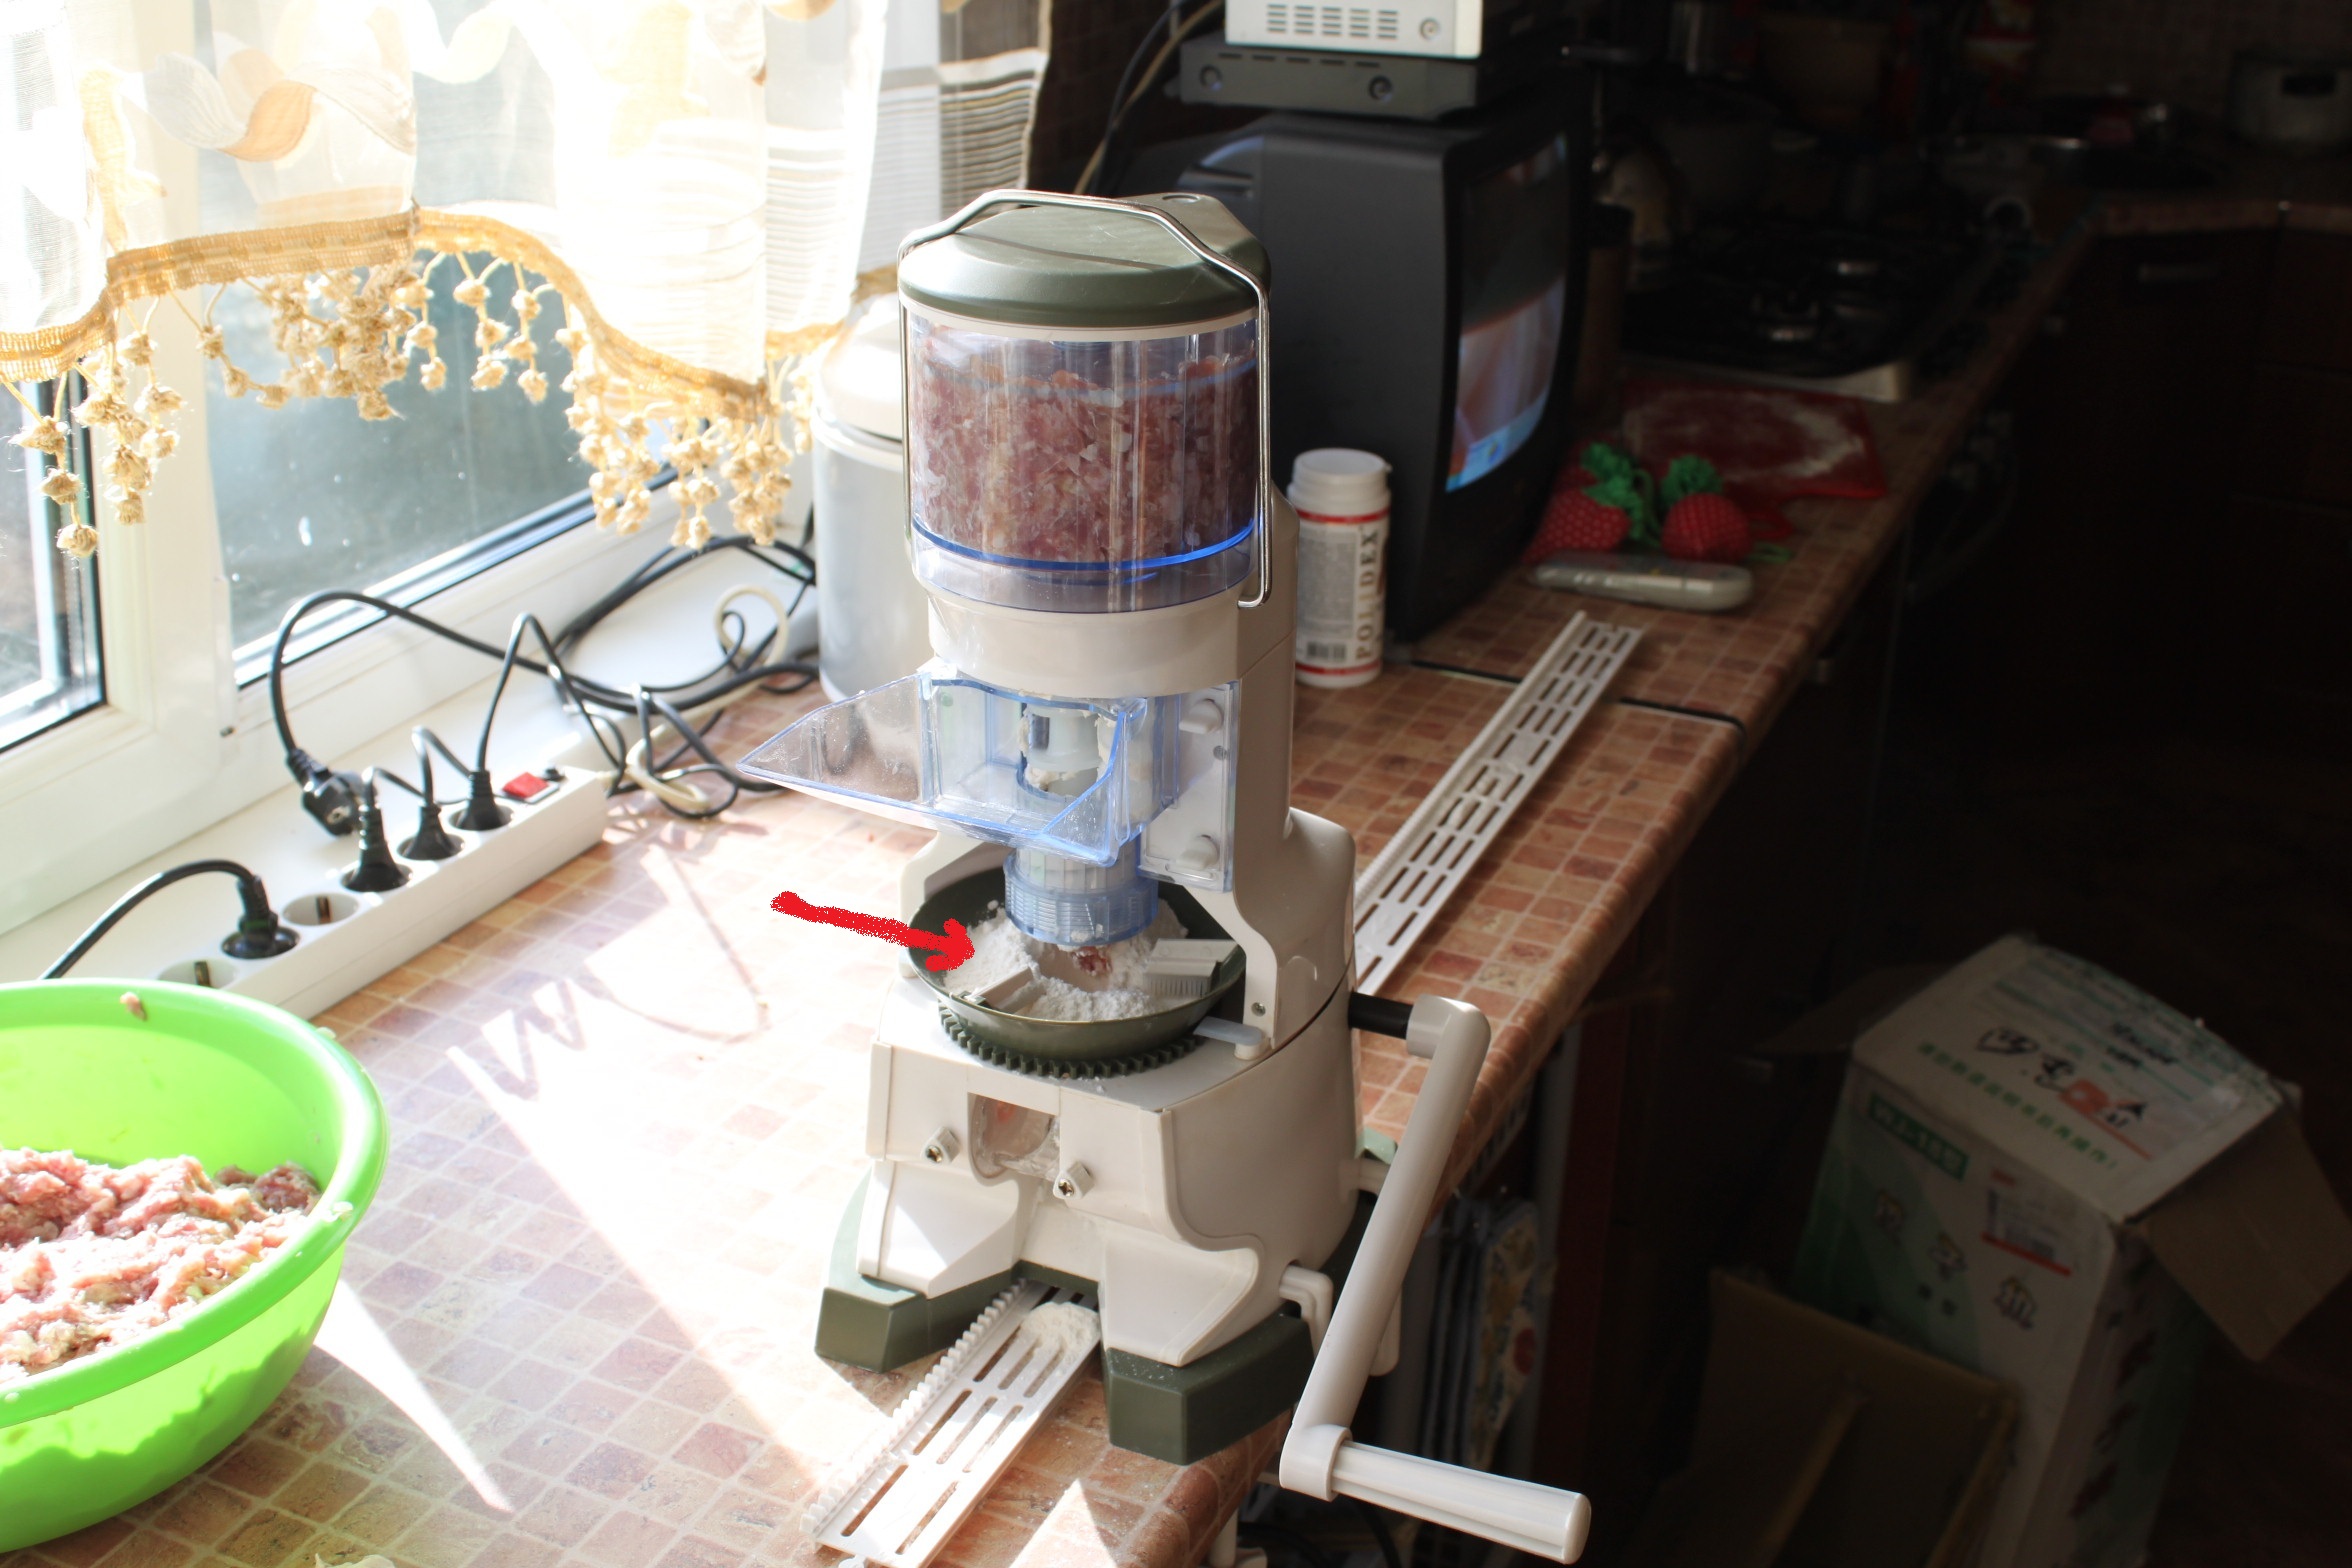 Gombóc, ravioli készítésére szolgáló gép